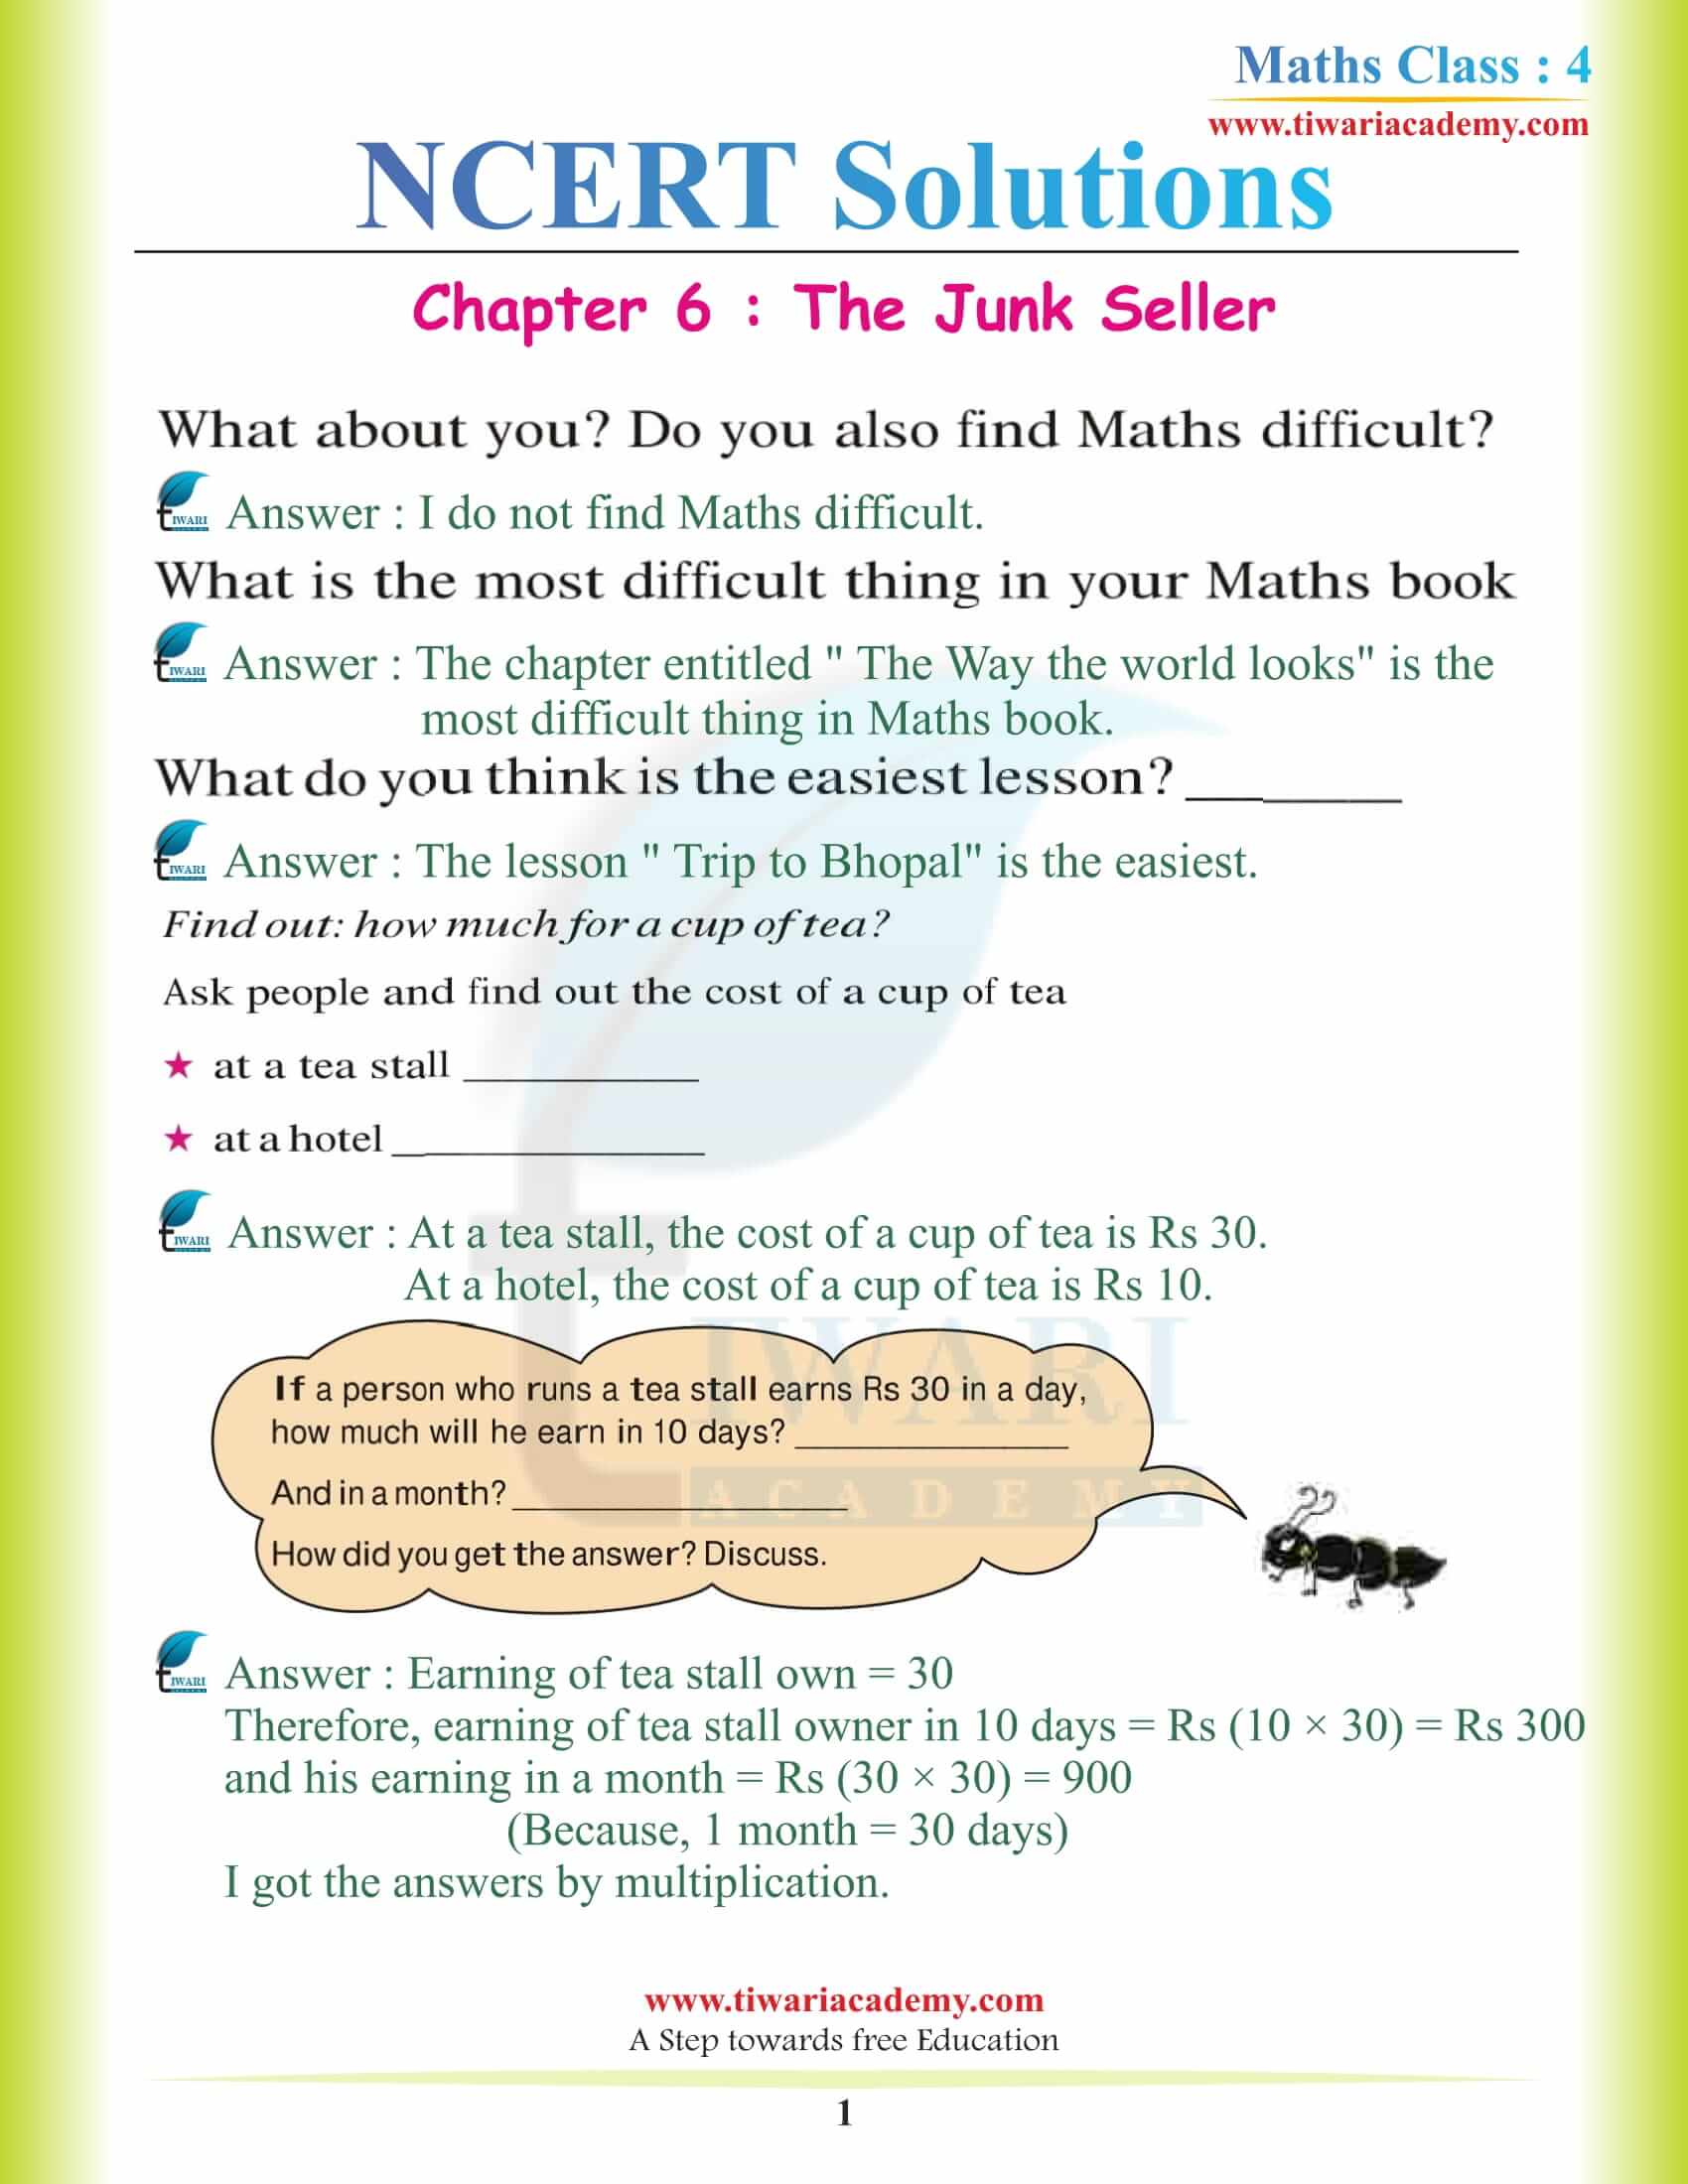 NCERT Solutions for Class 4 Maths Chapter 6 The Junk Seller